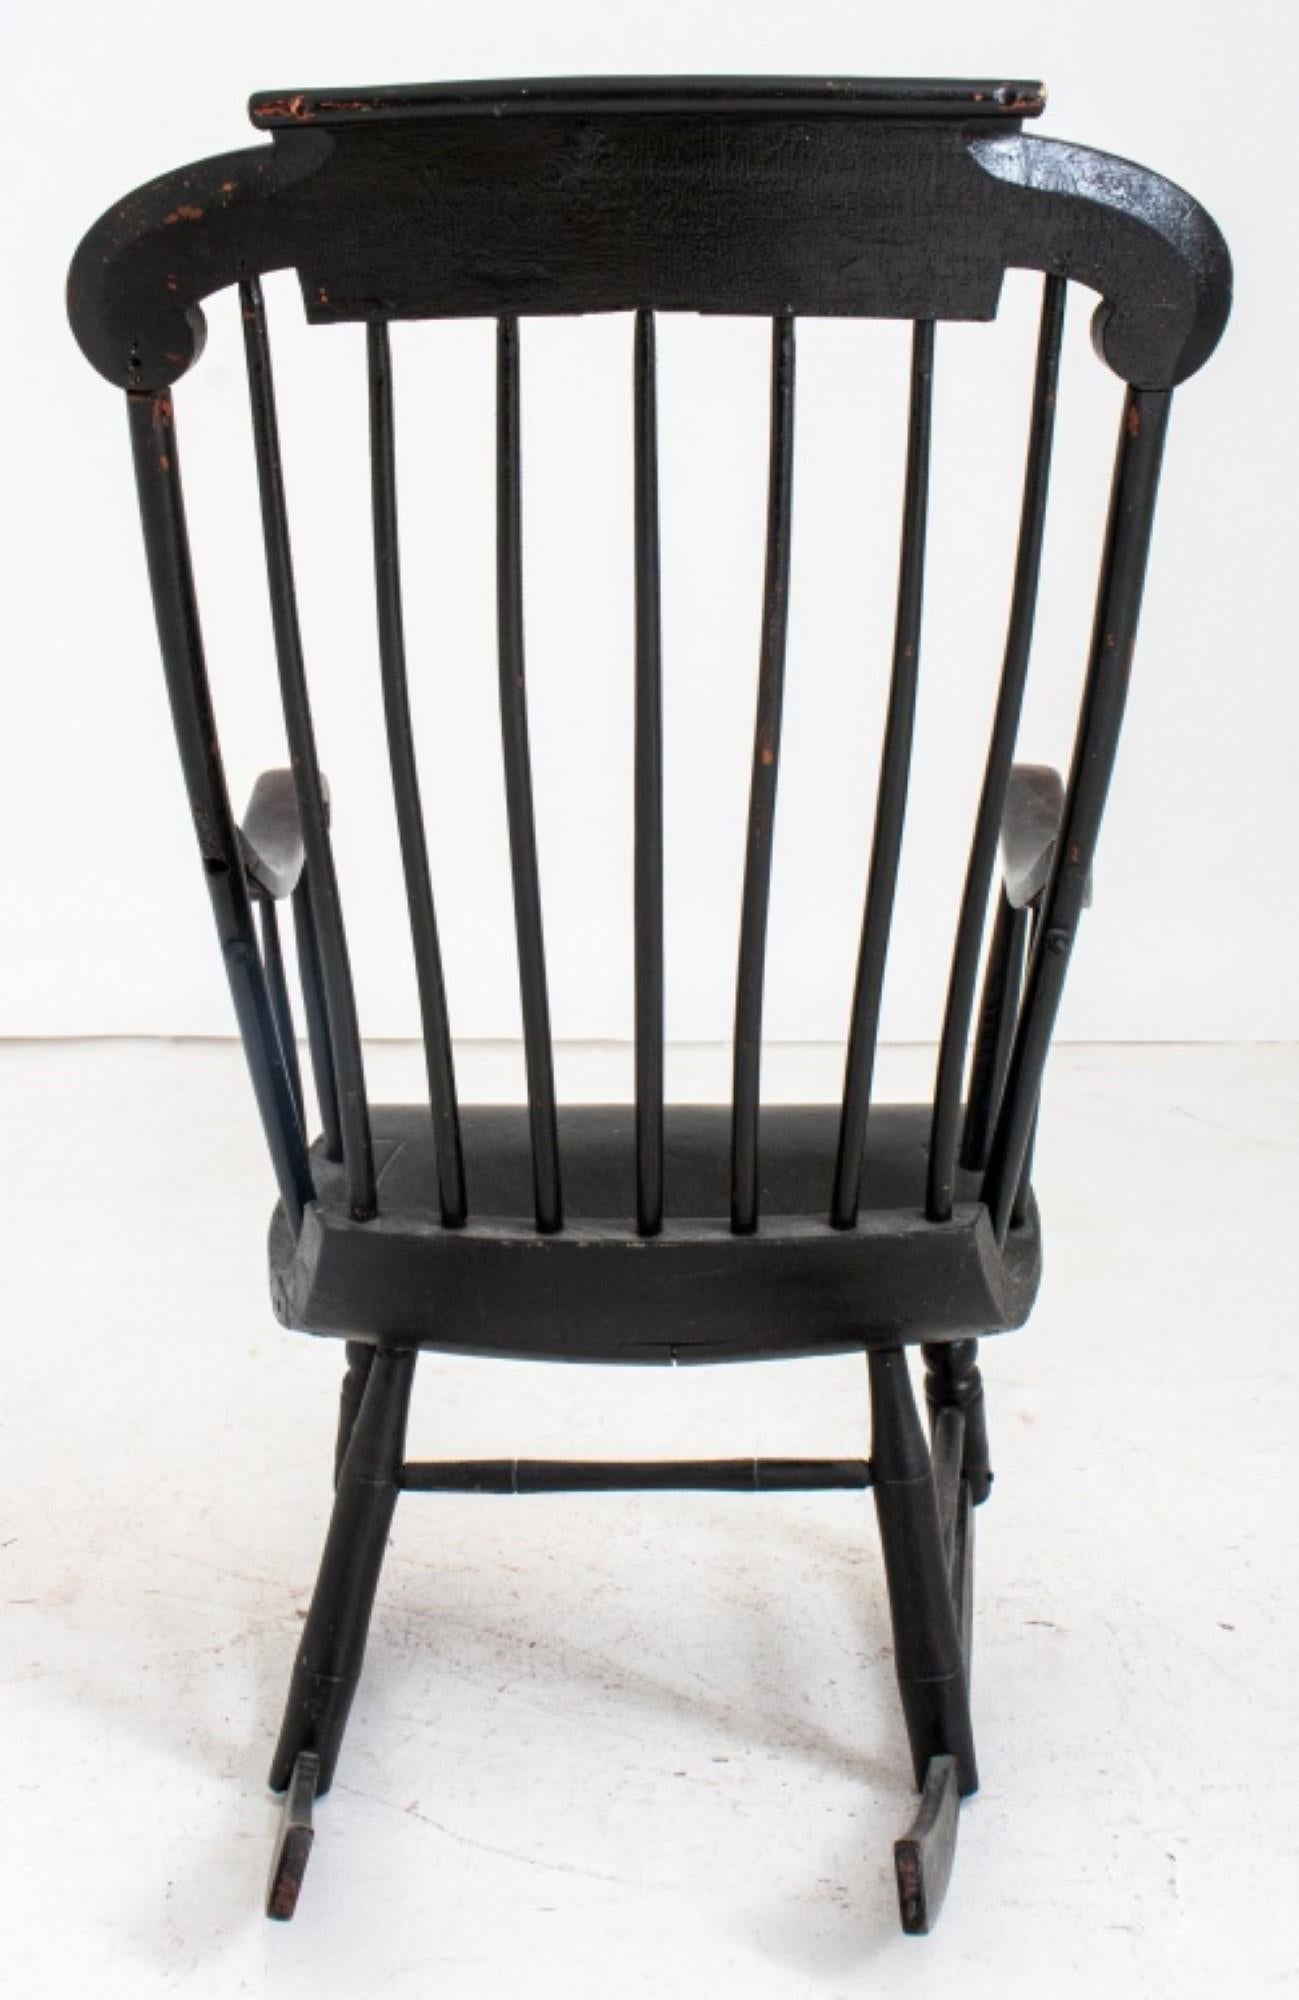 Chaise à bascule américaine peinte au lait noir, probablement du 19e siècle. Voici les détails :

Style : Américain, 19e siècle
Finition : laqué noir
Caractéristiques :
Lisse d'appui en forme
Corde à baguettes tournées
Siège rectangulaire